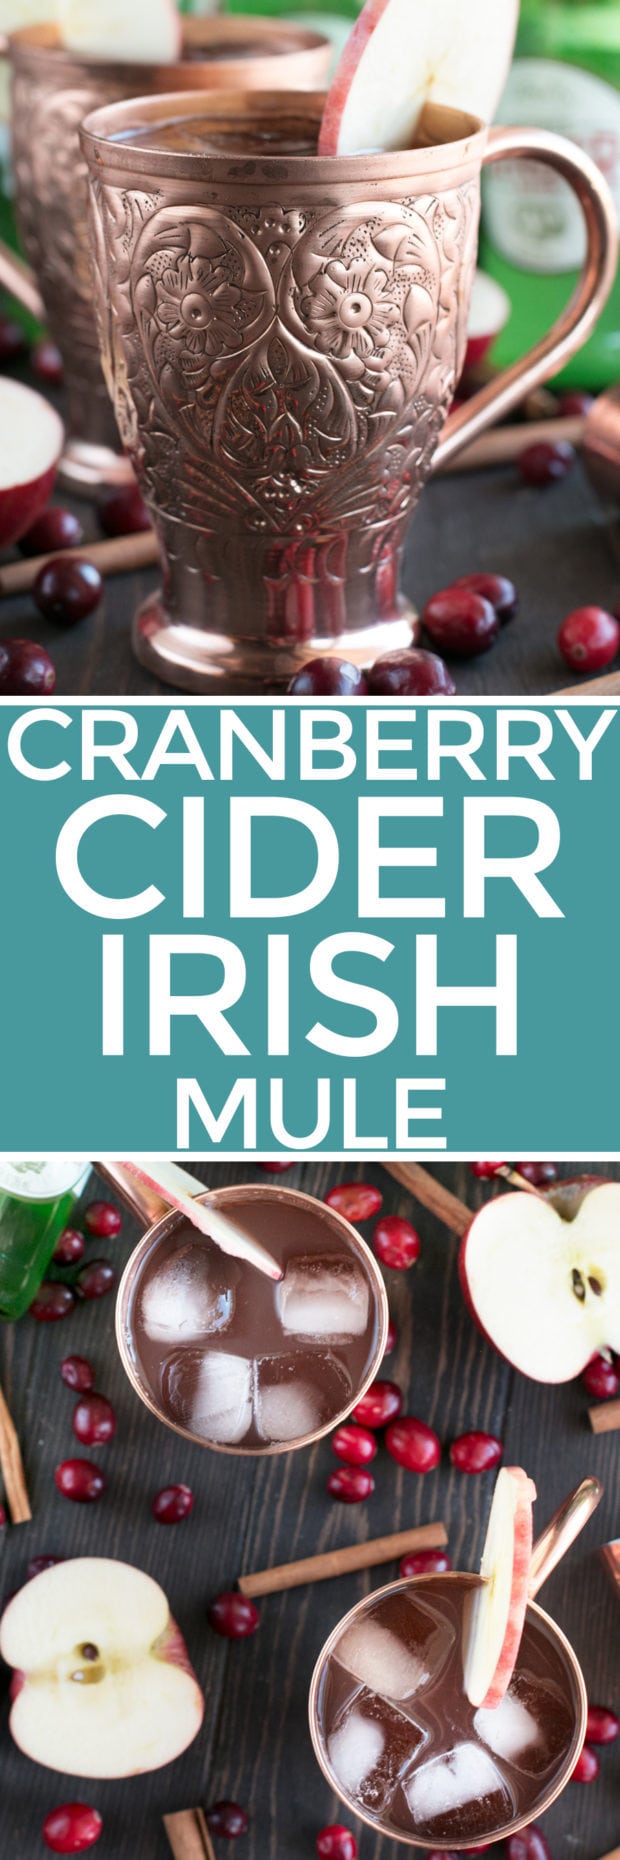 Cranberry Cider Irish Mule